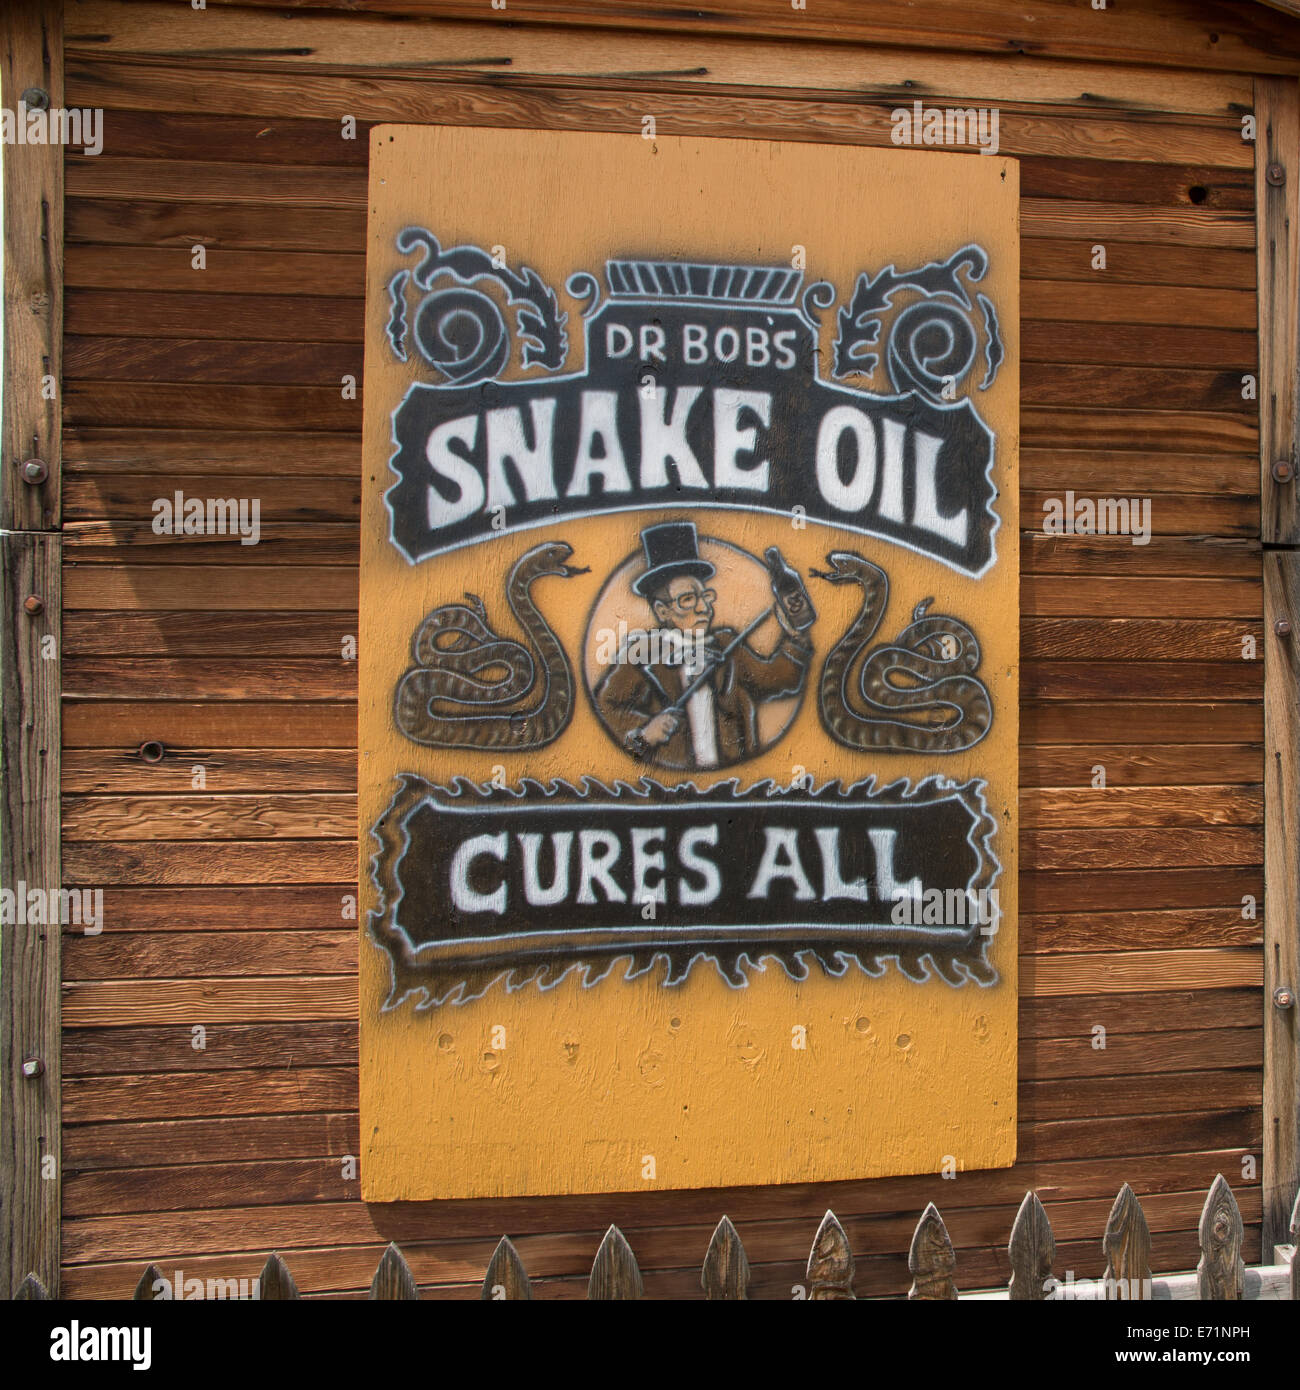 a-sign-for-dr-bobs-snake-oil-cure-all-in-masonville-co-E71NPH.jpg